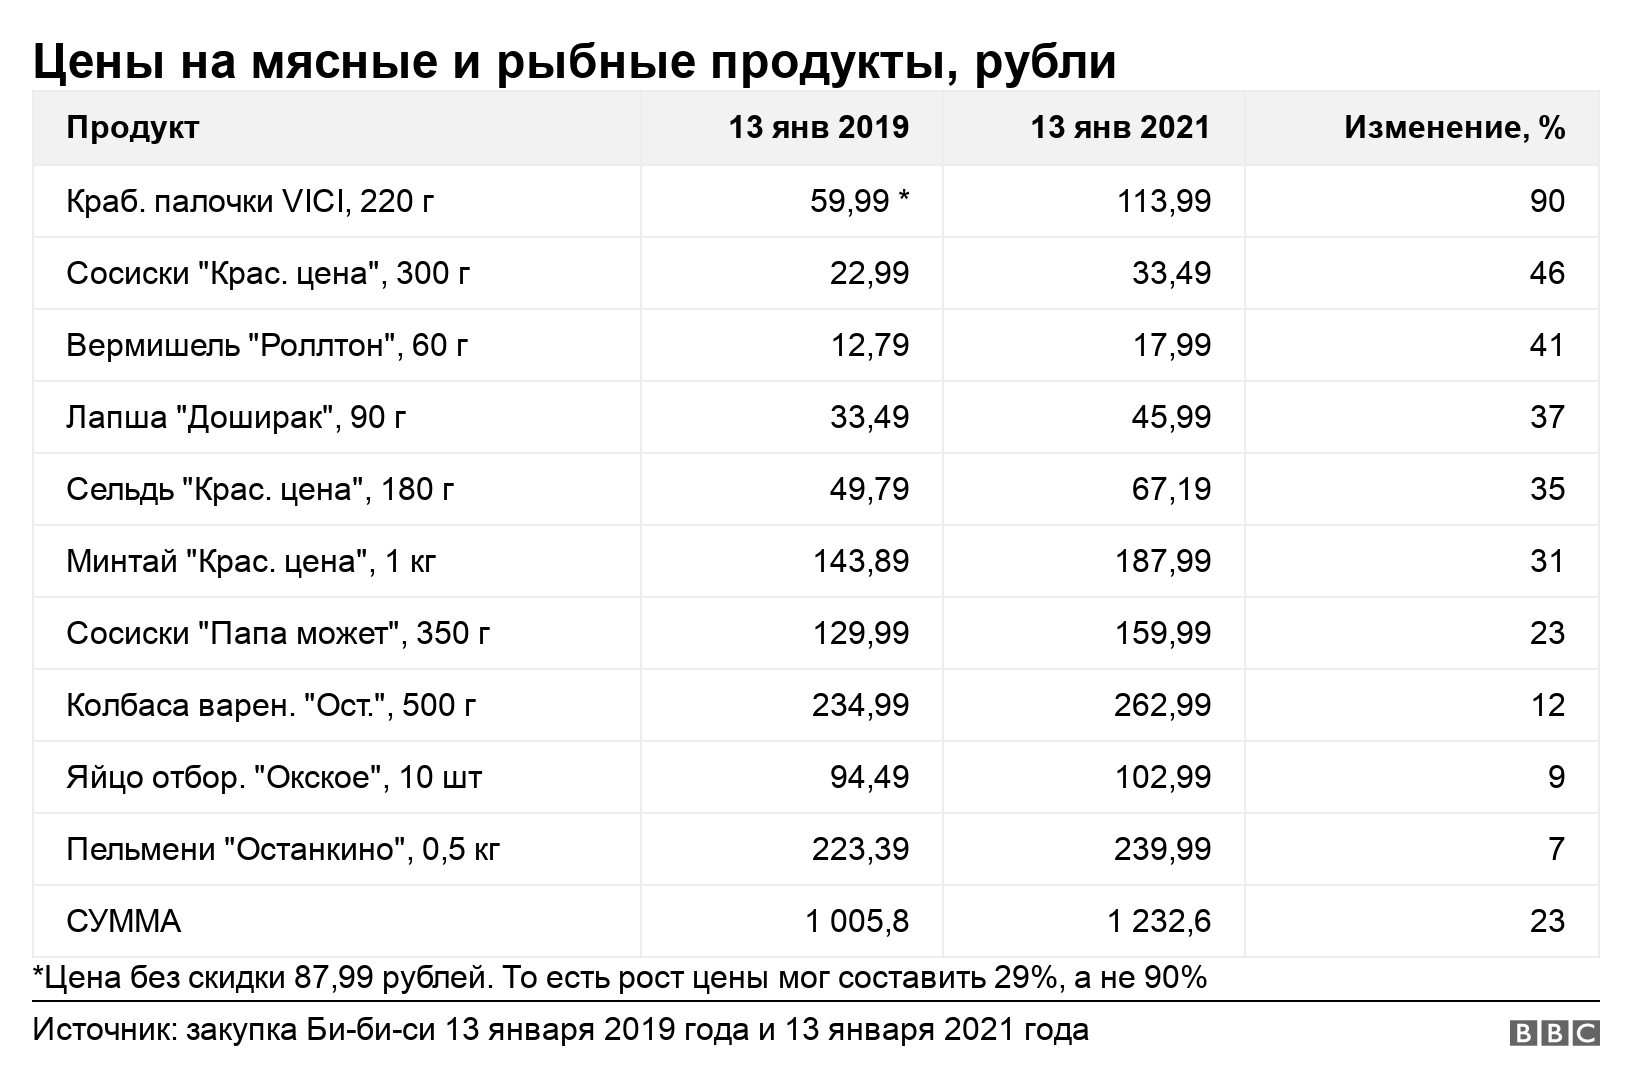 Цены на мясные и рыбные продукты, рубли. . *Цена без скидки 87,99 рублей. То есть рост цены мог составить 29%, а не 90%.